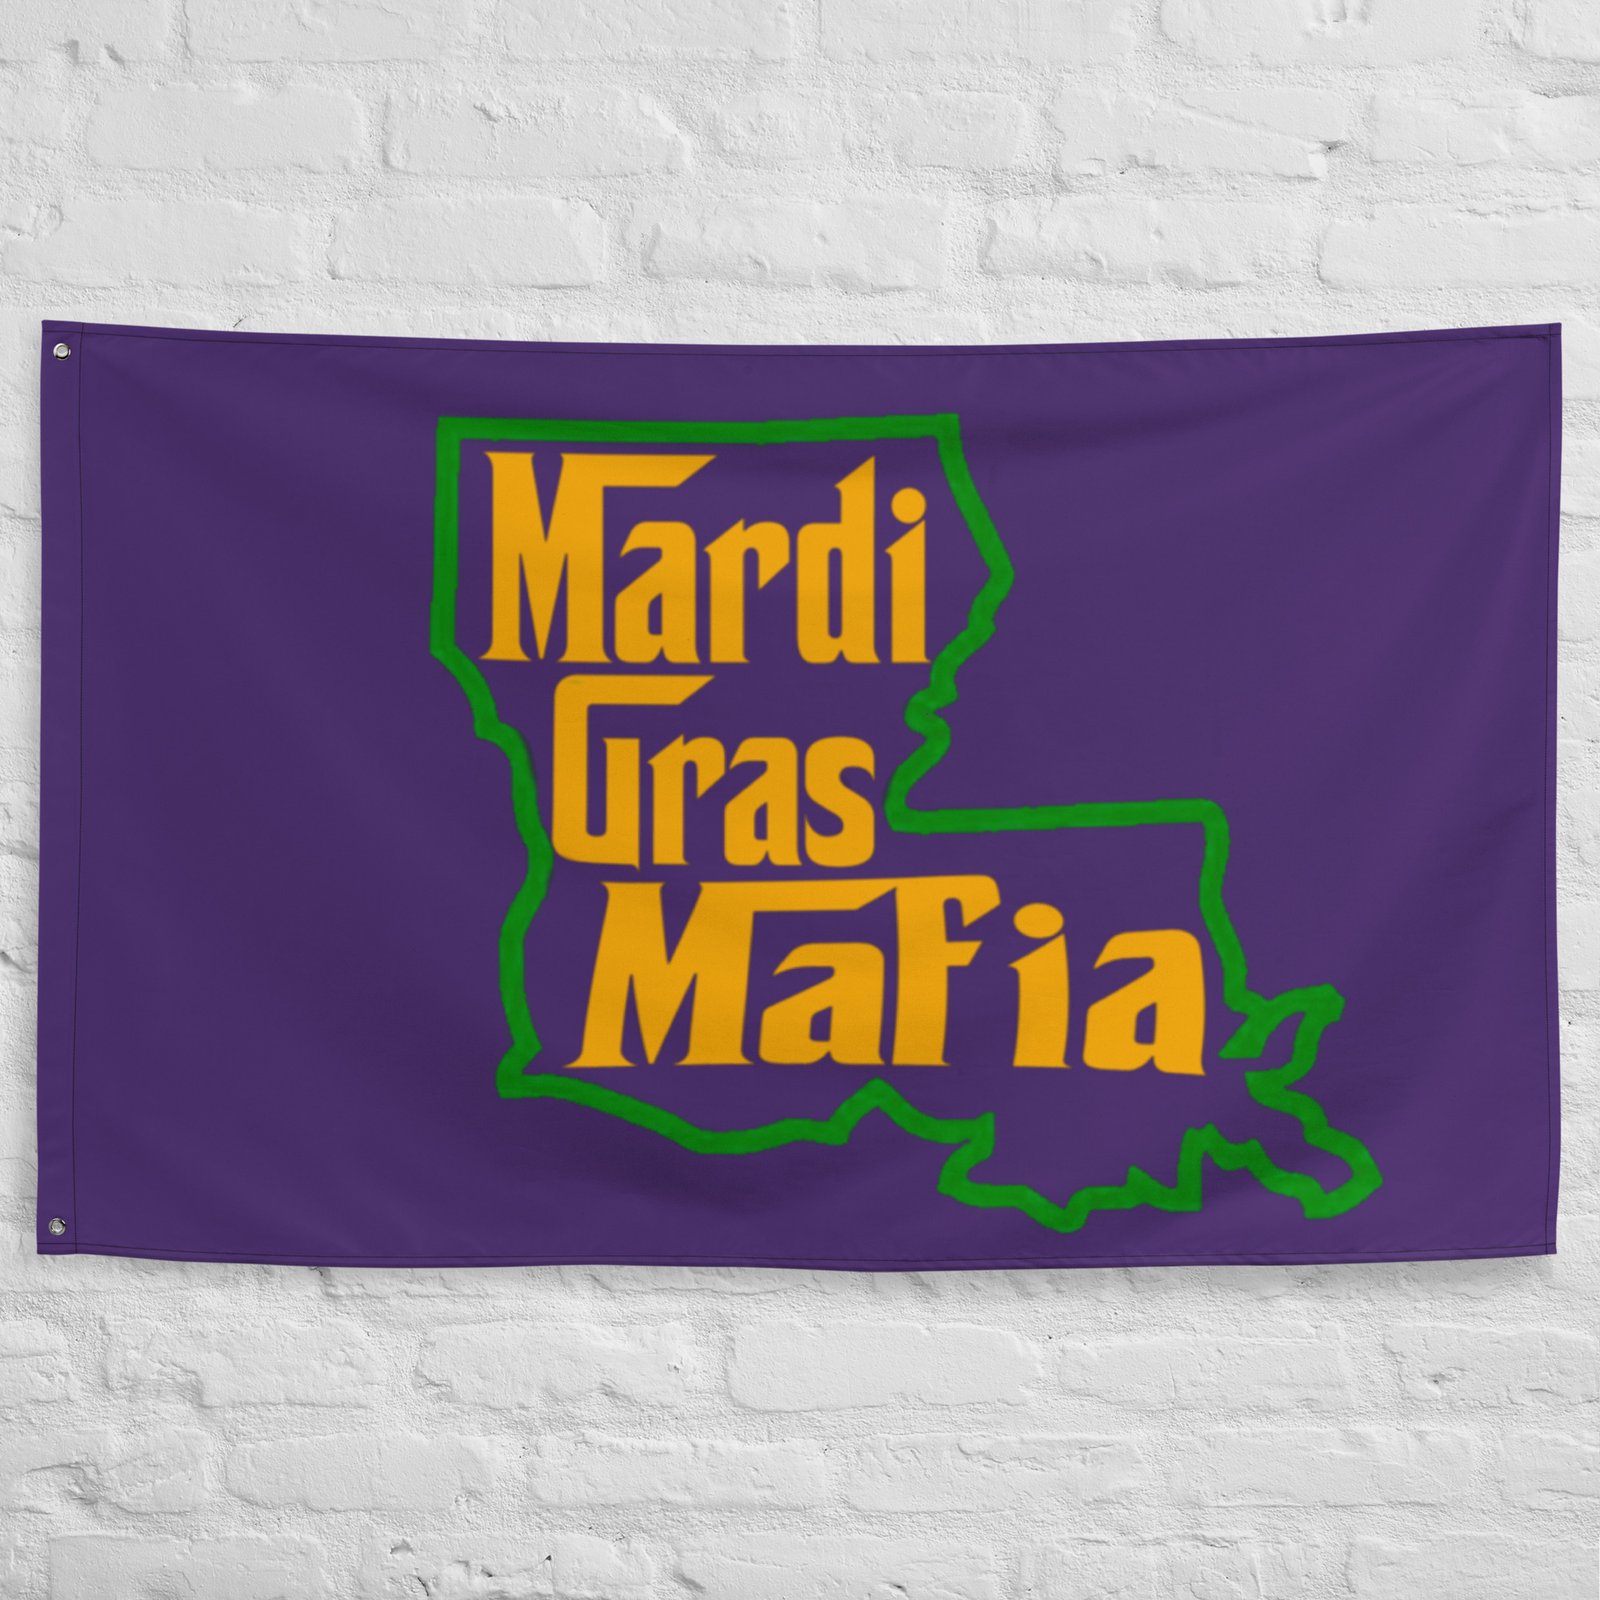 Mardi Gras Mafia Member Embroidered Patches